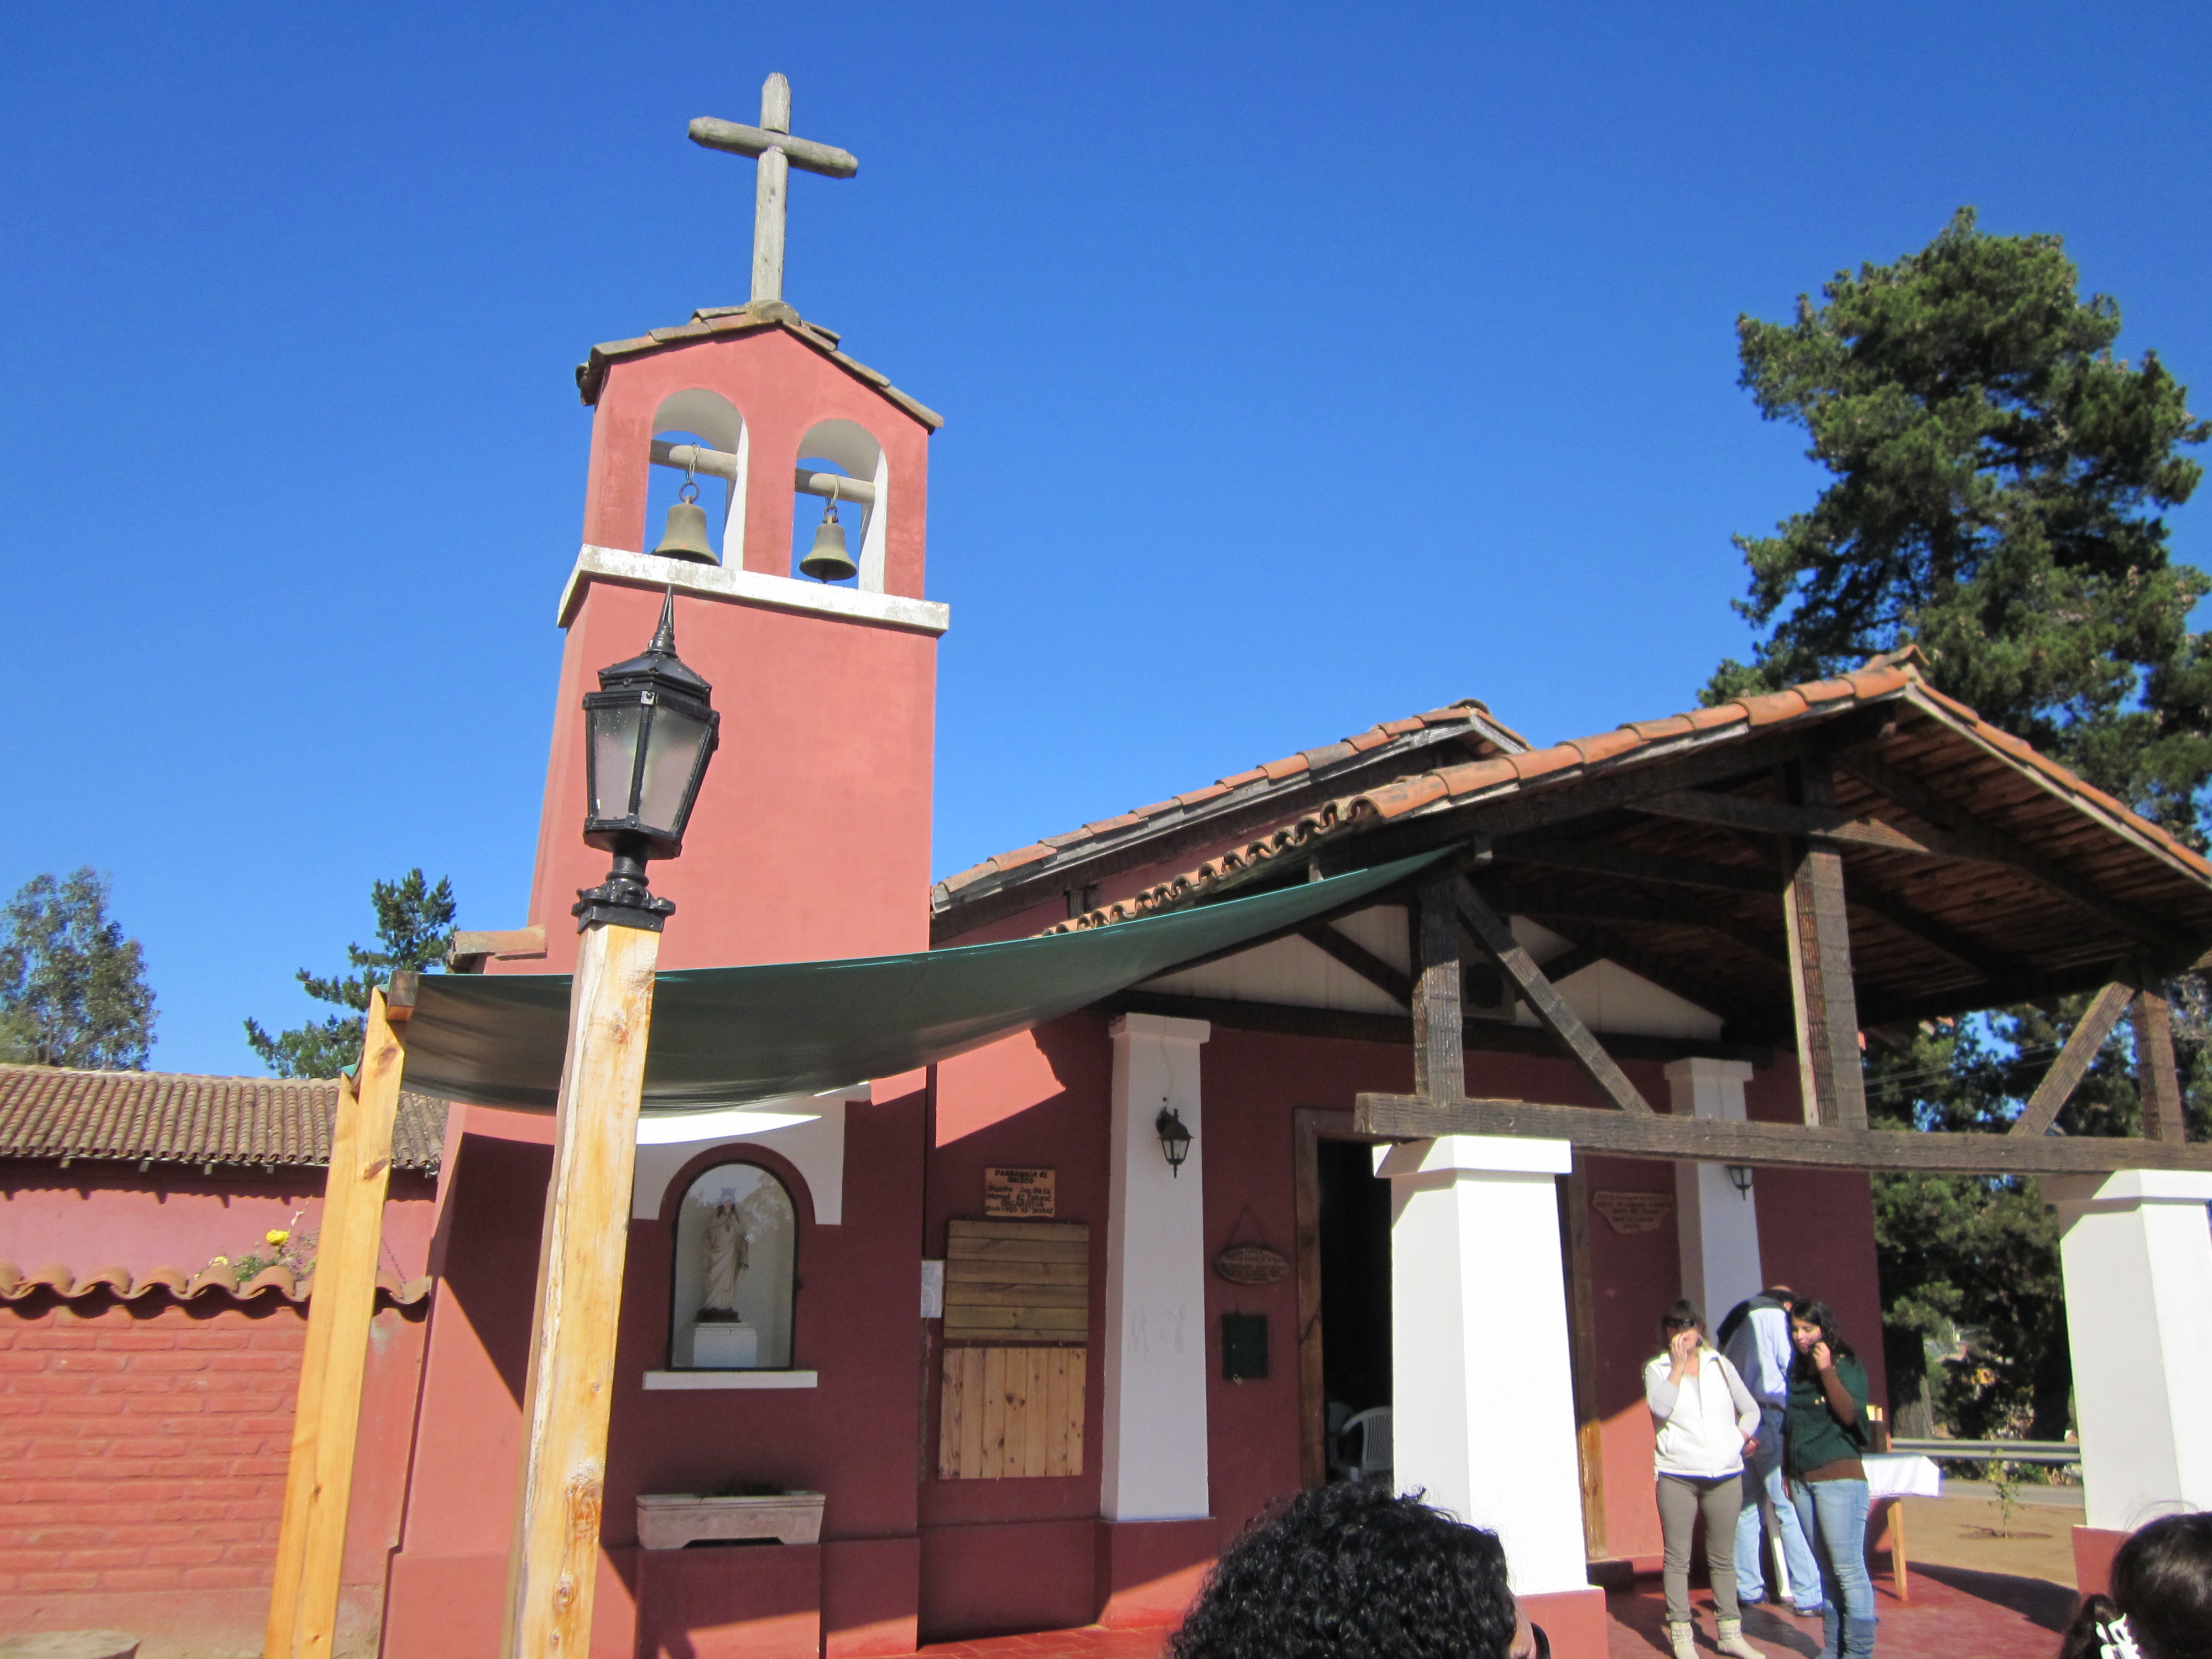 Foto: La iglesia de la localidad antes de la misa dominical - El Totoral (Valparaíso), Chile